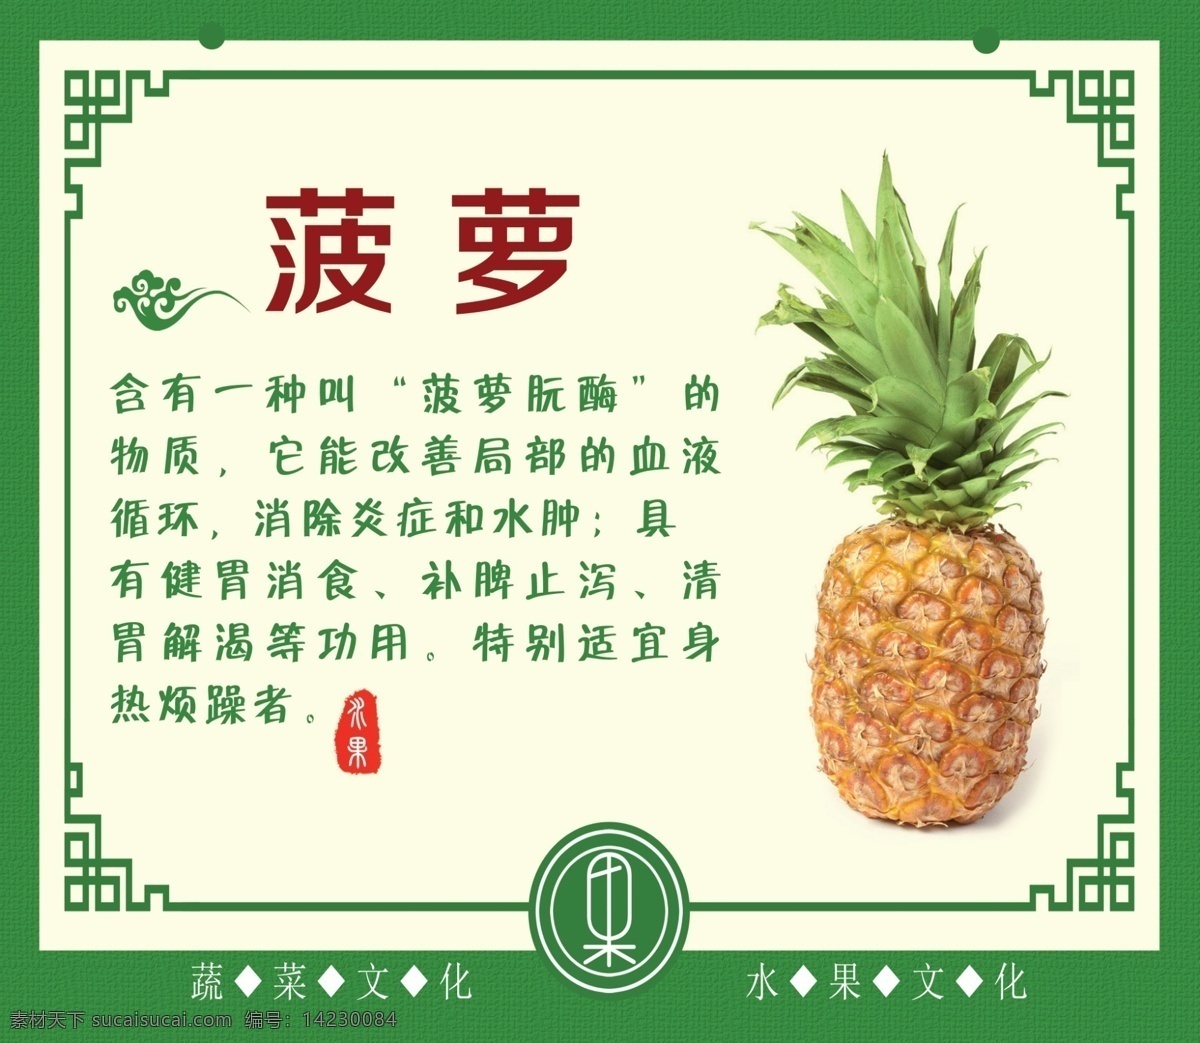 菠萝 水果 水果介绍 水果牌 超市水果 水果吊牌 水果知识 大气简约 高清 海报 水果海报 水果展板